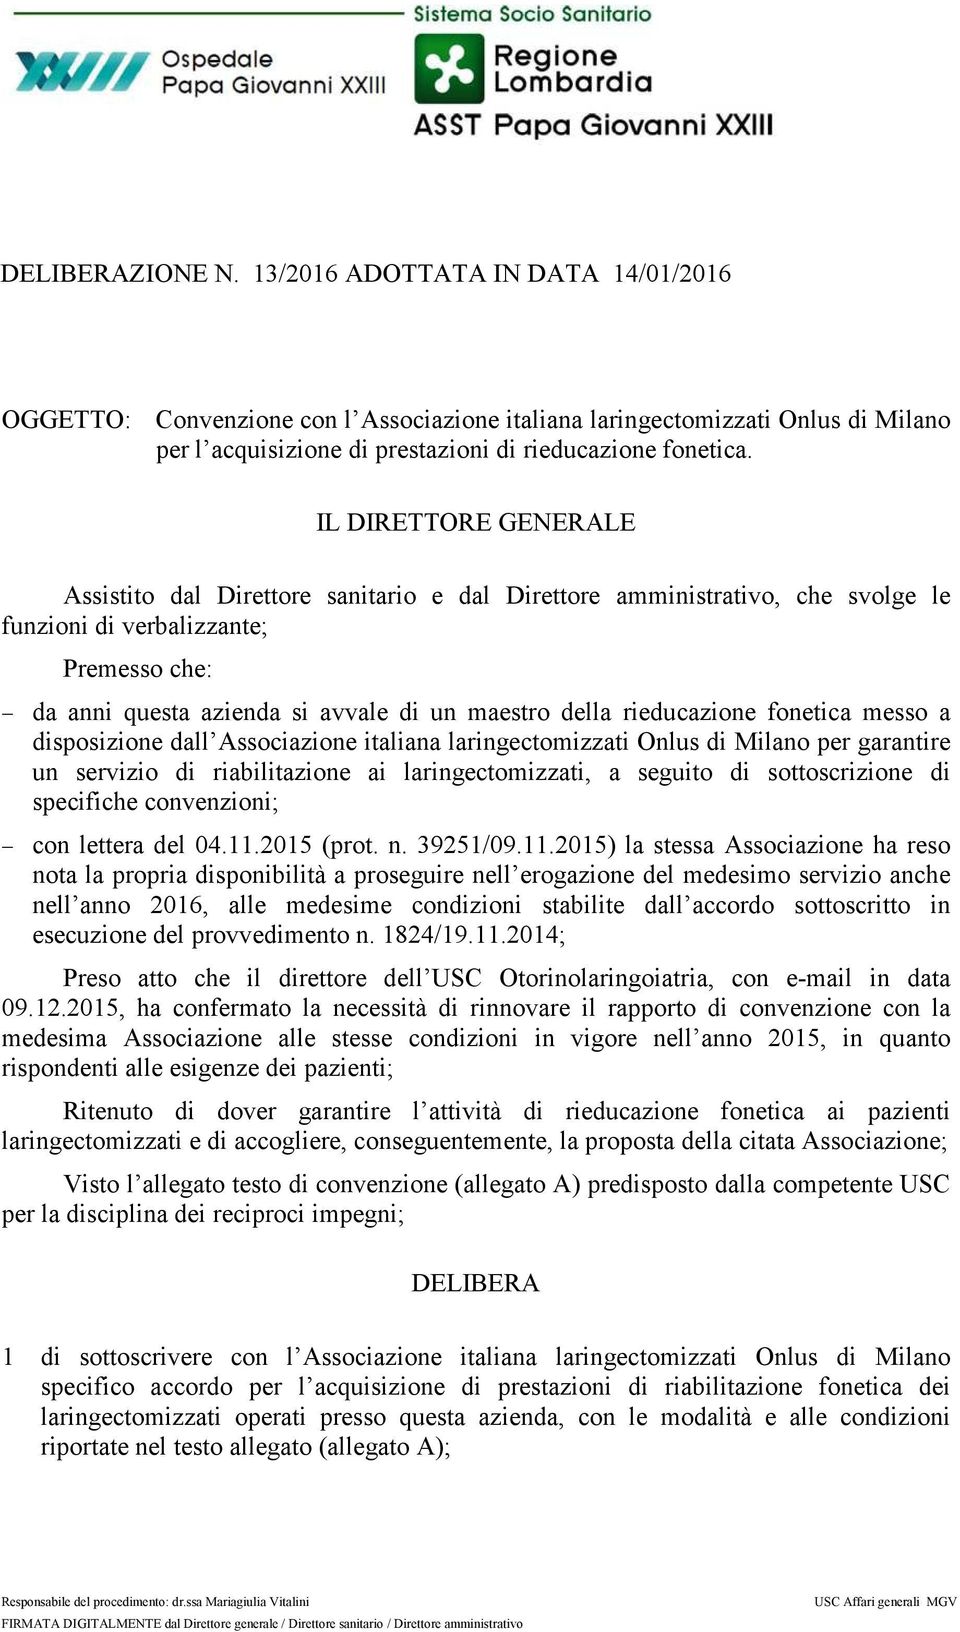 messo a disposizione dall Associazione italiana laringectomizzati Onlus di Milano per garantire un servizio di riabilitazione ai laringectomizzati, a seguito di sottoscrizione di specifiche